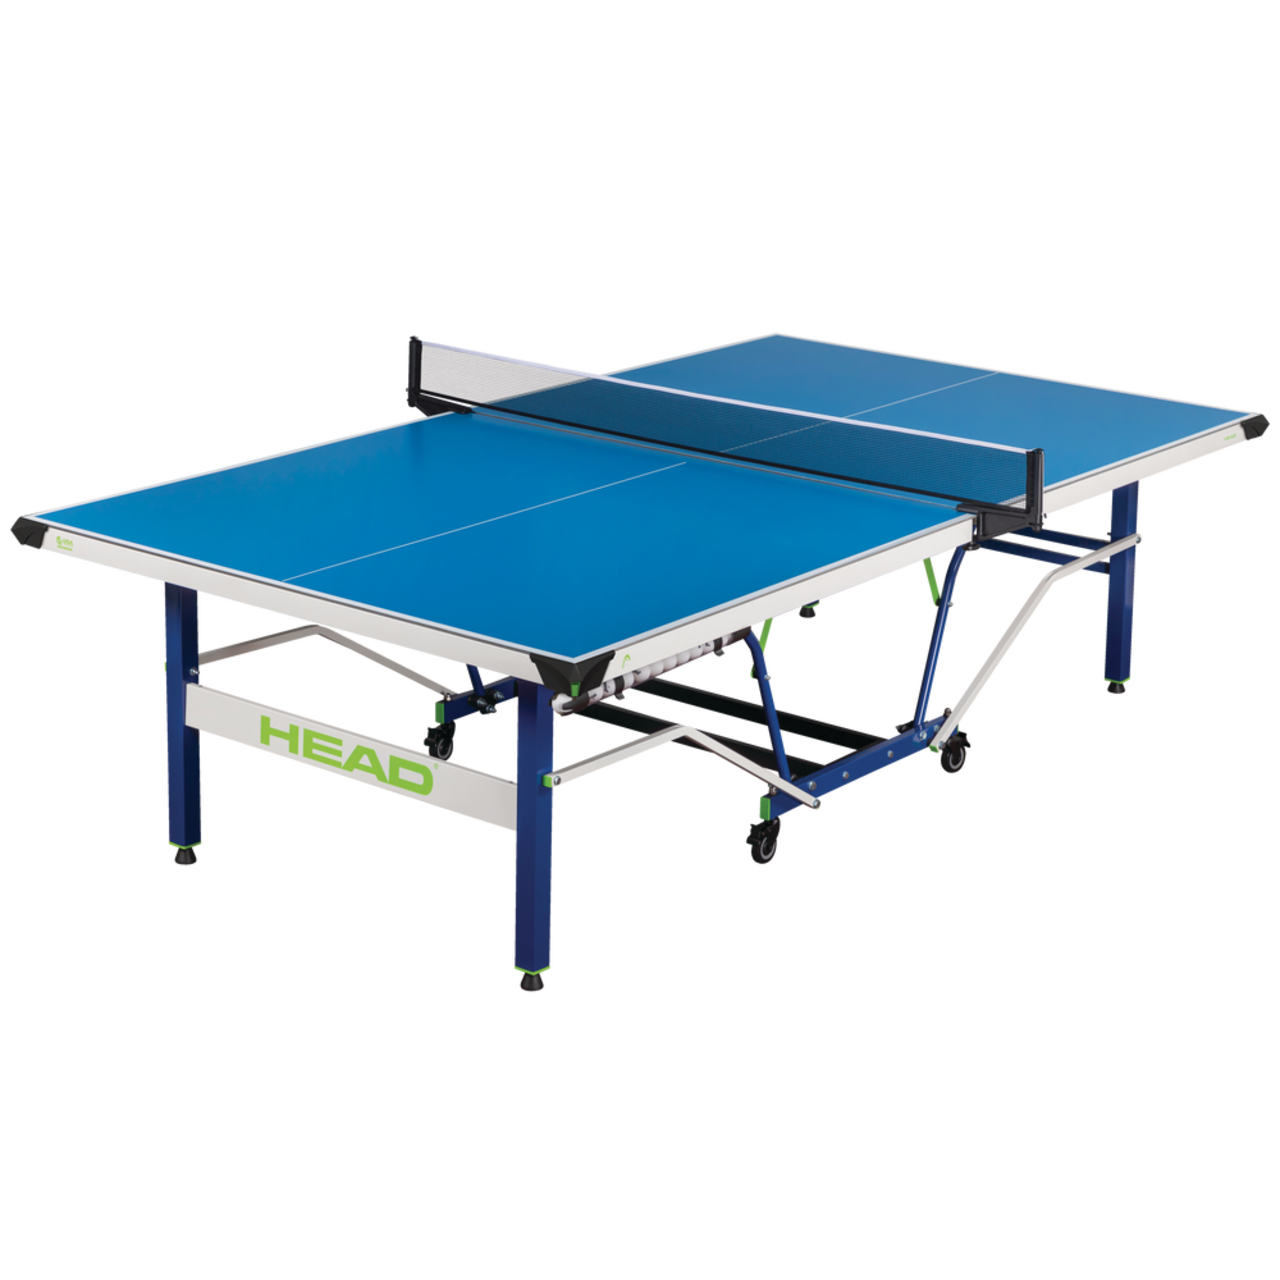 Sac de tennis de table coloré et durable - idéal pour transporter